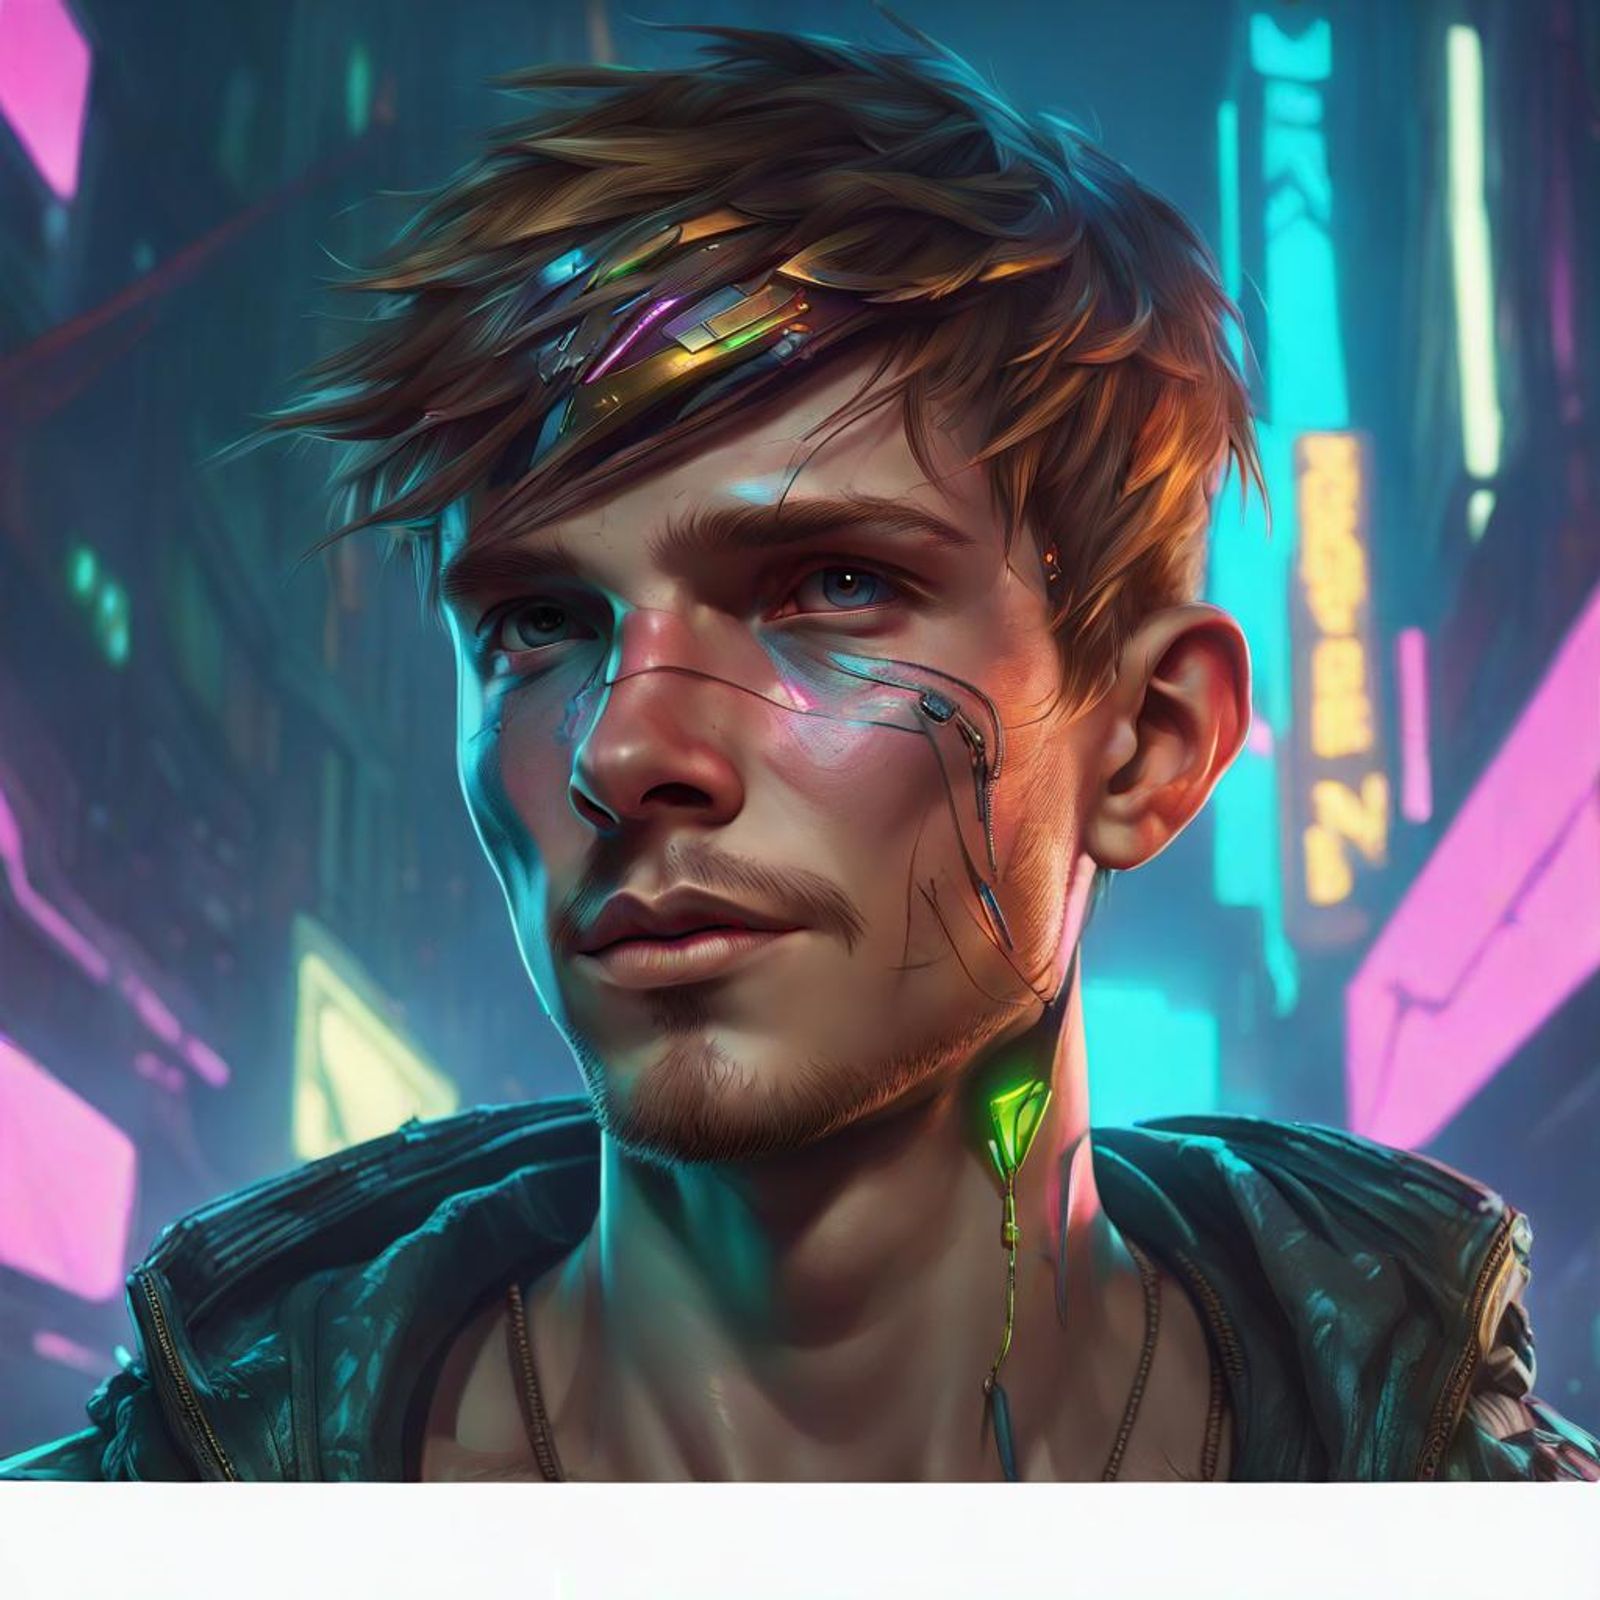 cyberpunk male portrait